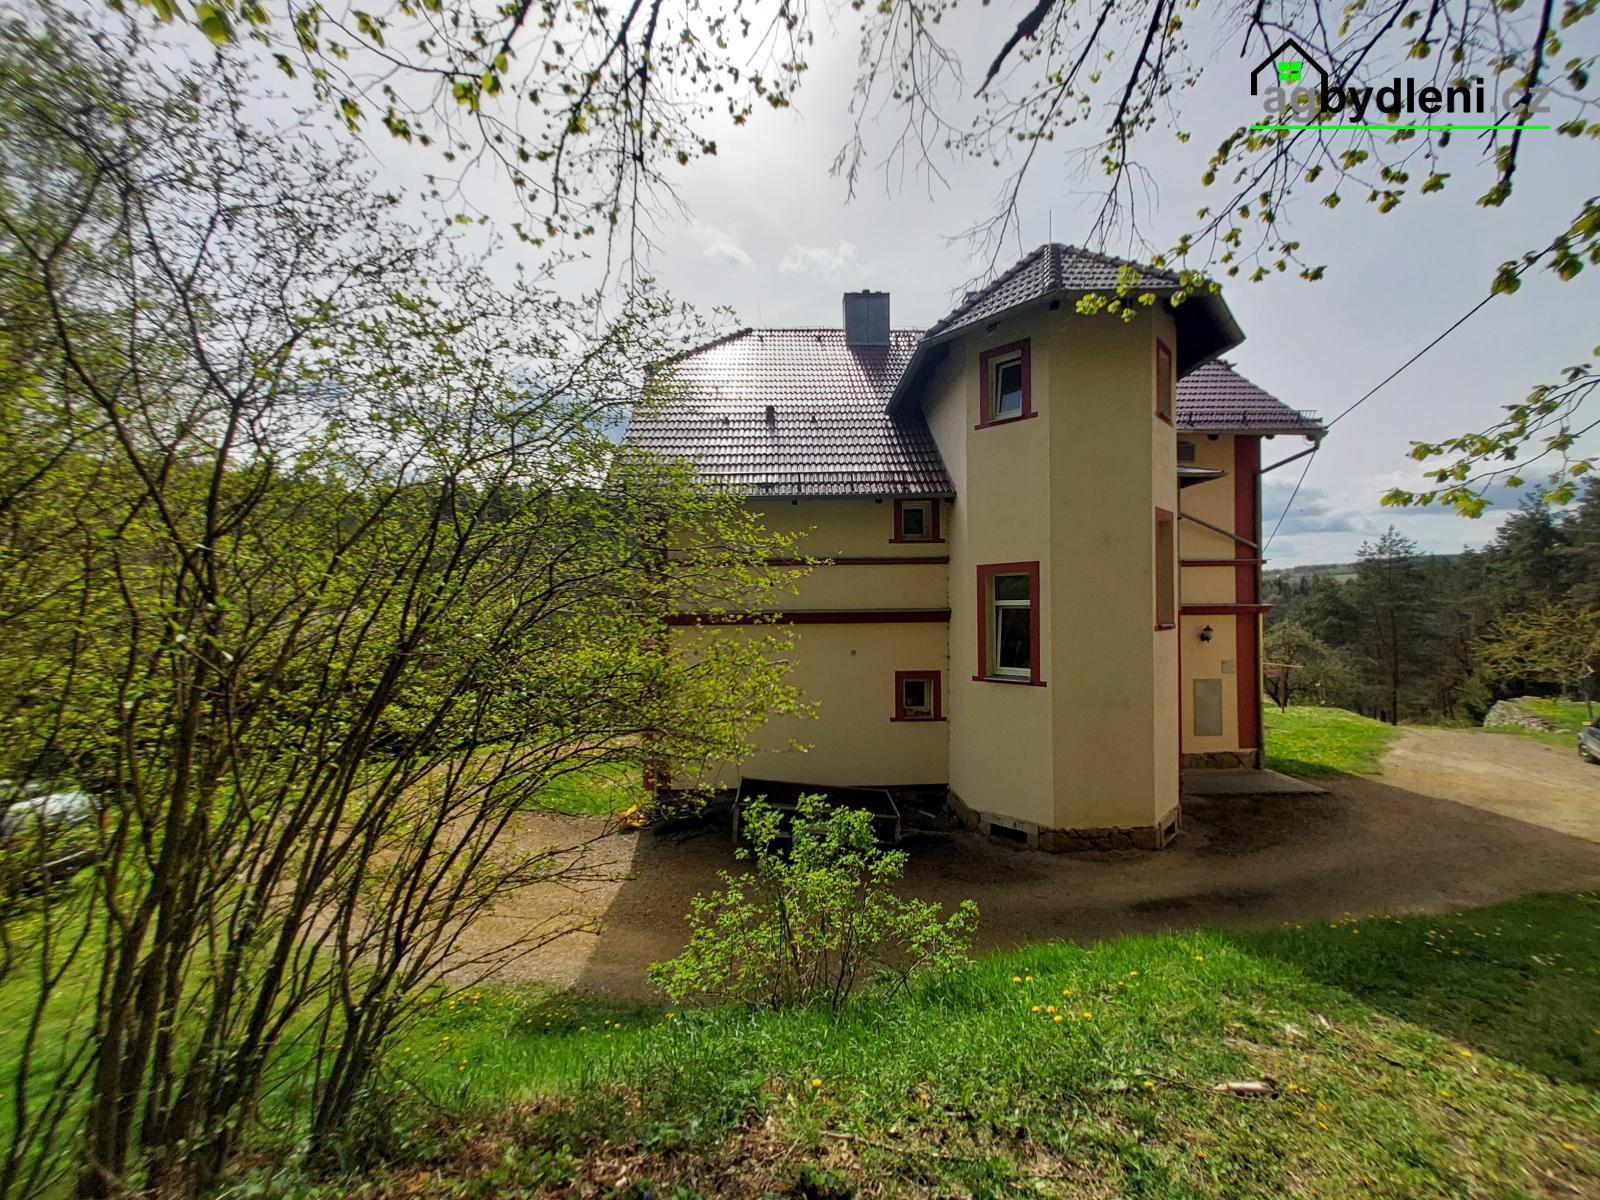 Pronájem dvougeneračního domu 4+1 a 3+1, 100m2/patro, Svojšín, okr. Tachov v Plzeňském kraji